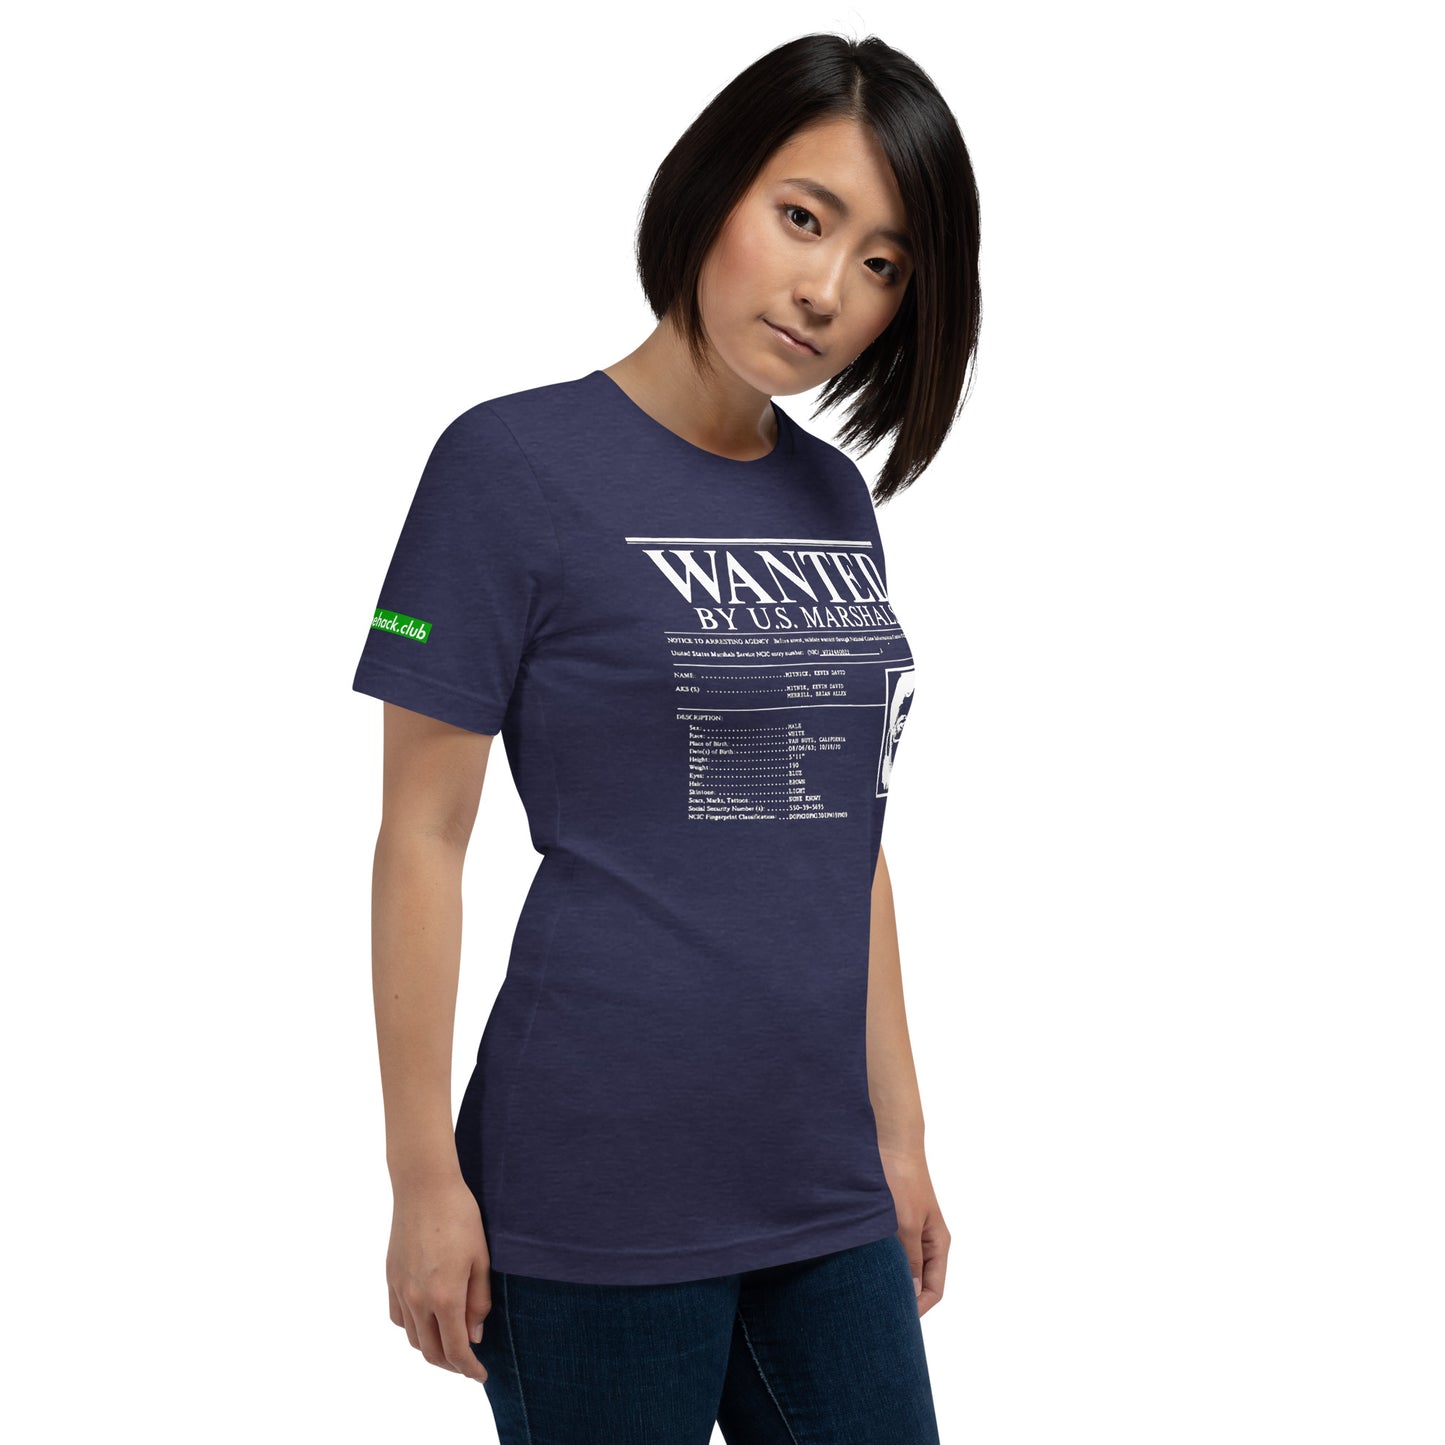 Kevin Mitnicks beliebtestes Foto-Unisex-T-Shirt